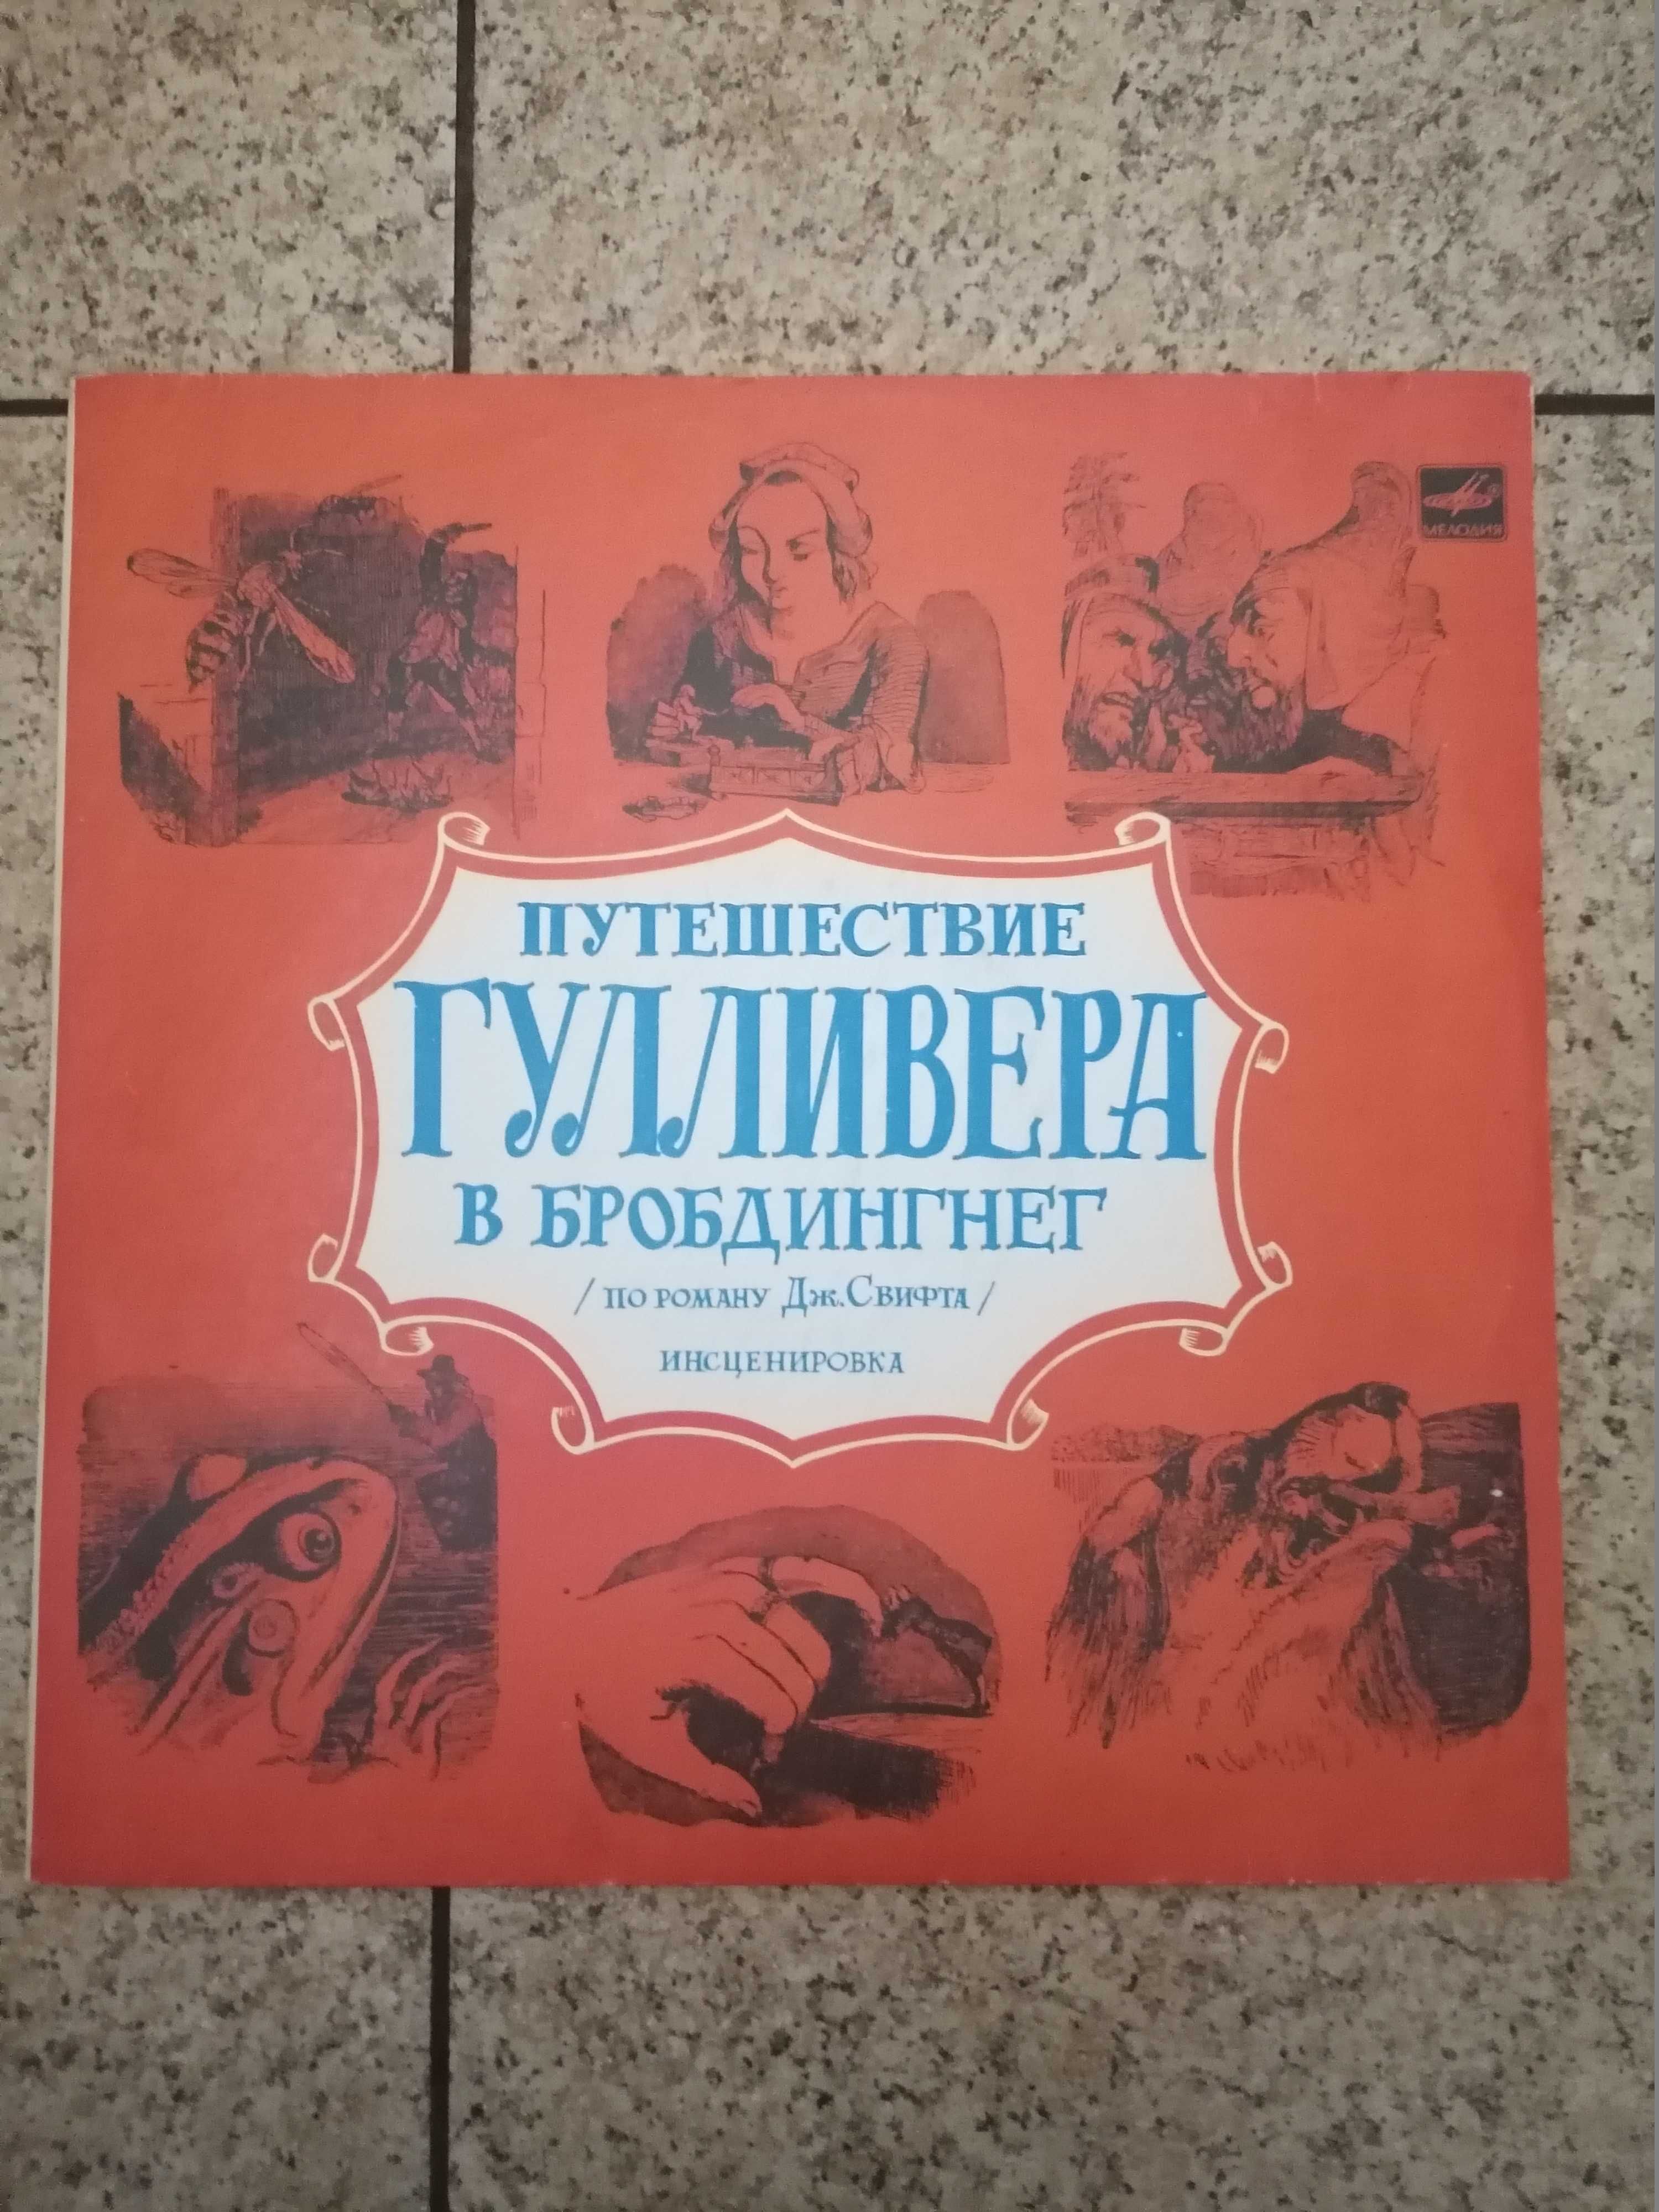 Пластинки для детей сказки времен СССР.